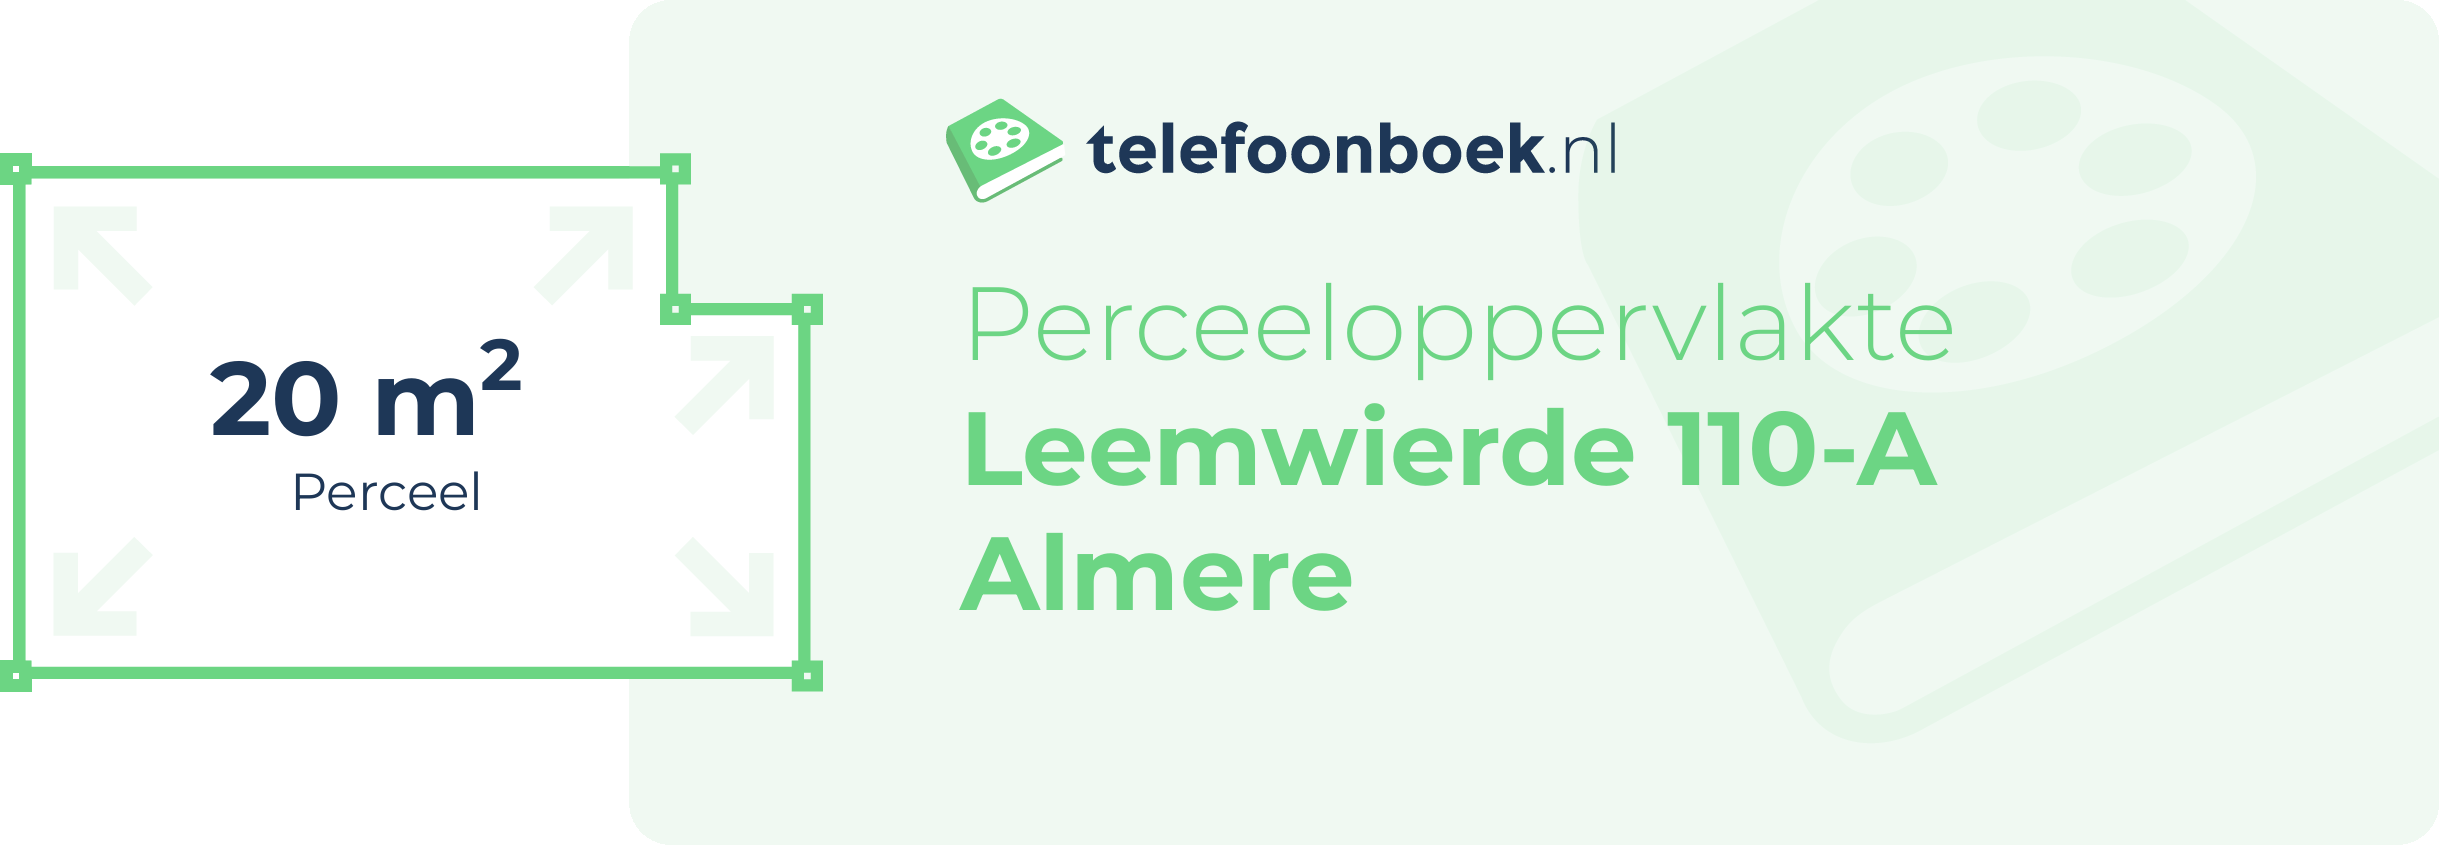 Perceeloppervlakte Leemwierde 110-A Almere